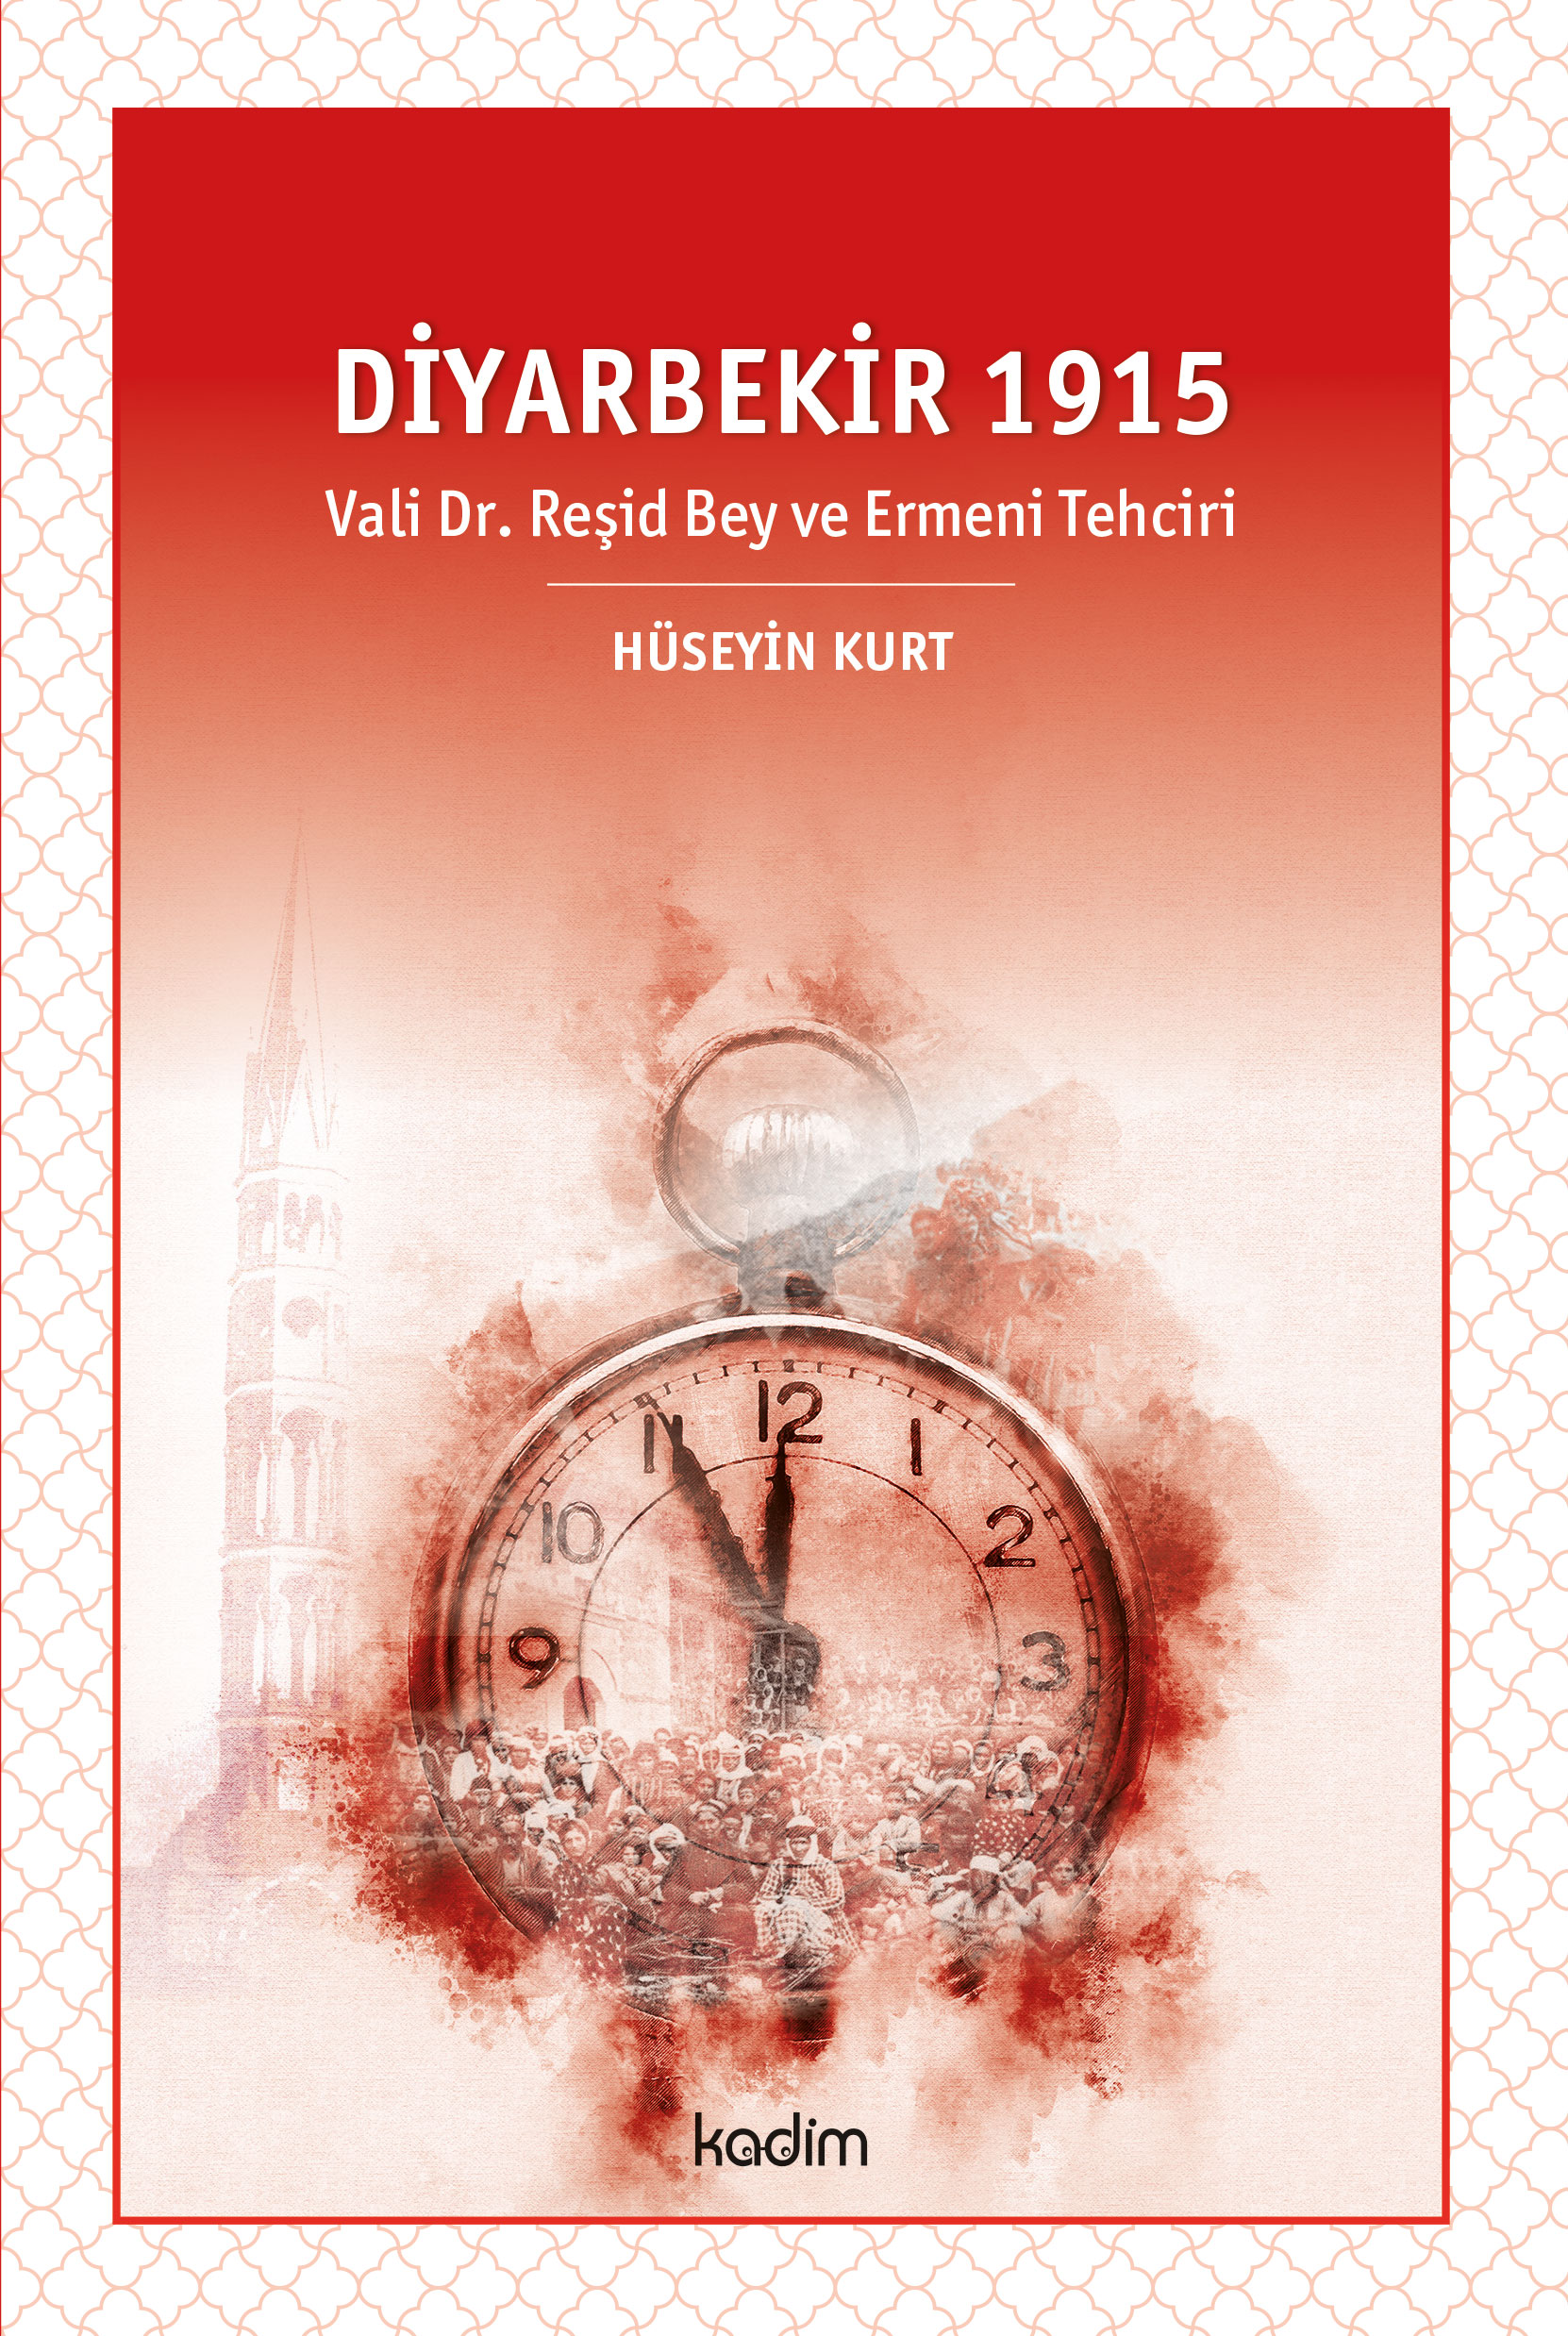 DİYARBEKİR 1915 - Vali Dr. Reşid Bey ve Ermeni Tehciri